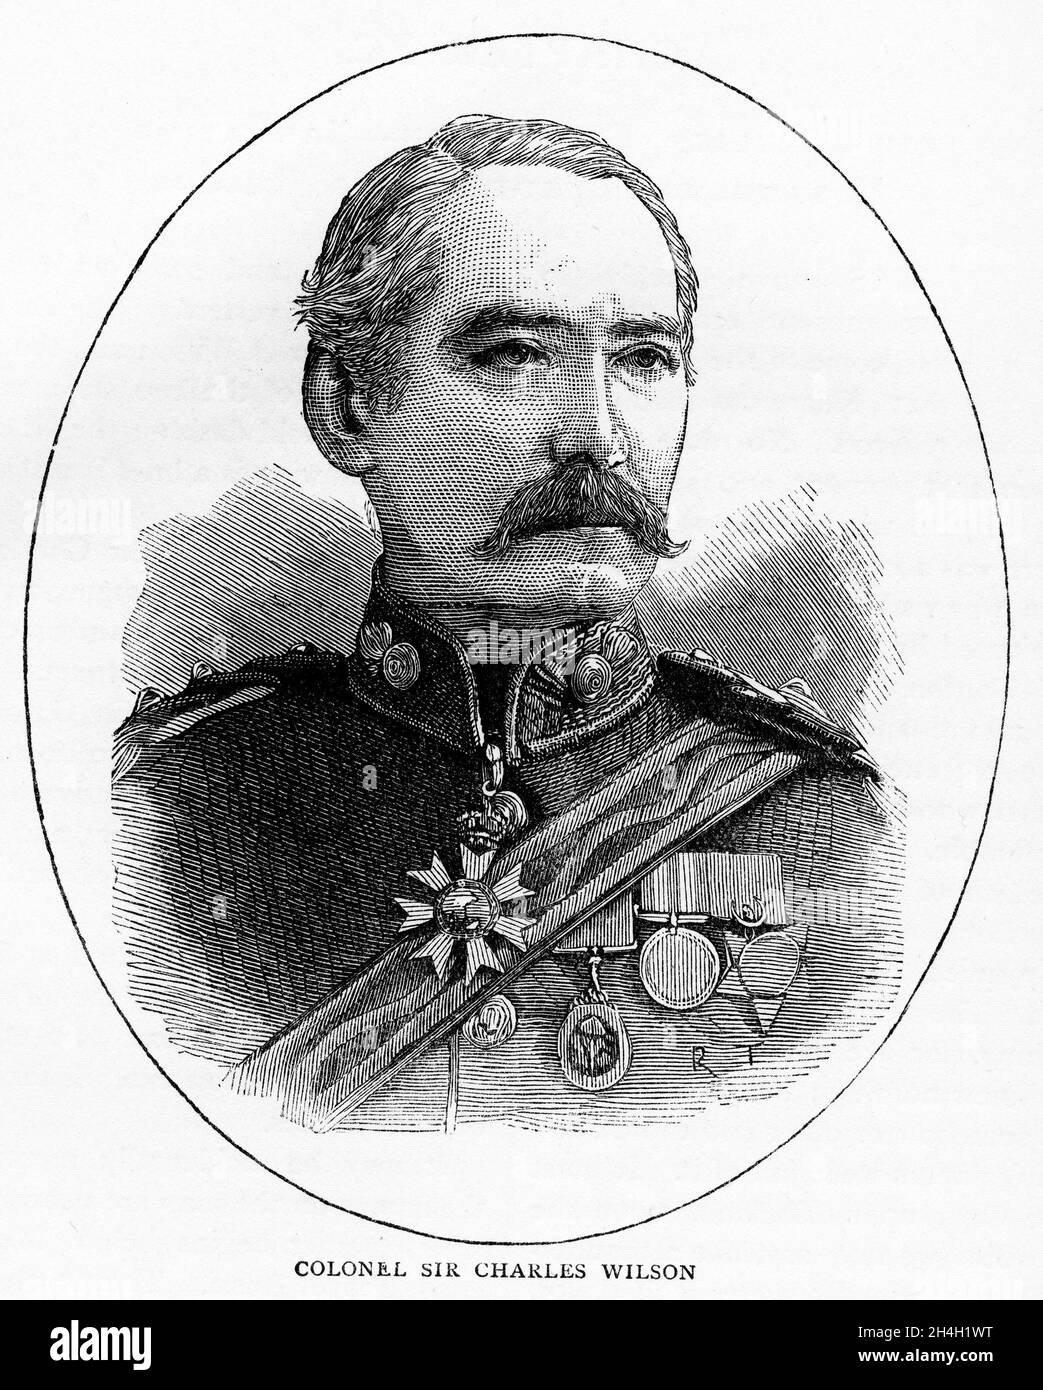 Eingraviertes Porträt des Generalmajors Sir Charles William Wilson, KCB, KCMG, FRS (1836 – 1905), Offizier der britischen Armee, Geograph und Archäologe. Stockfoto